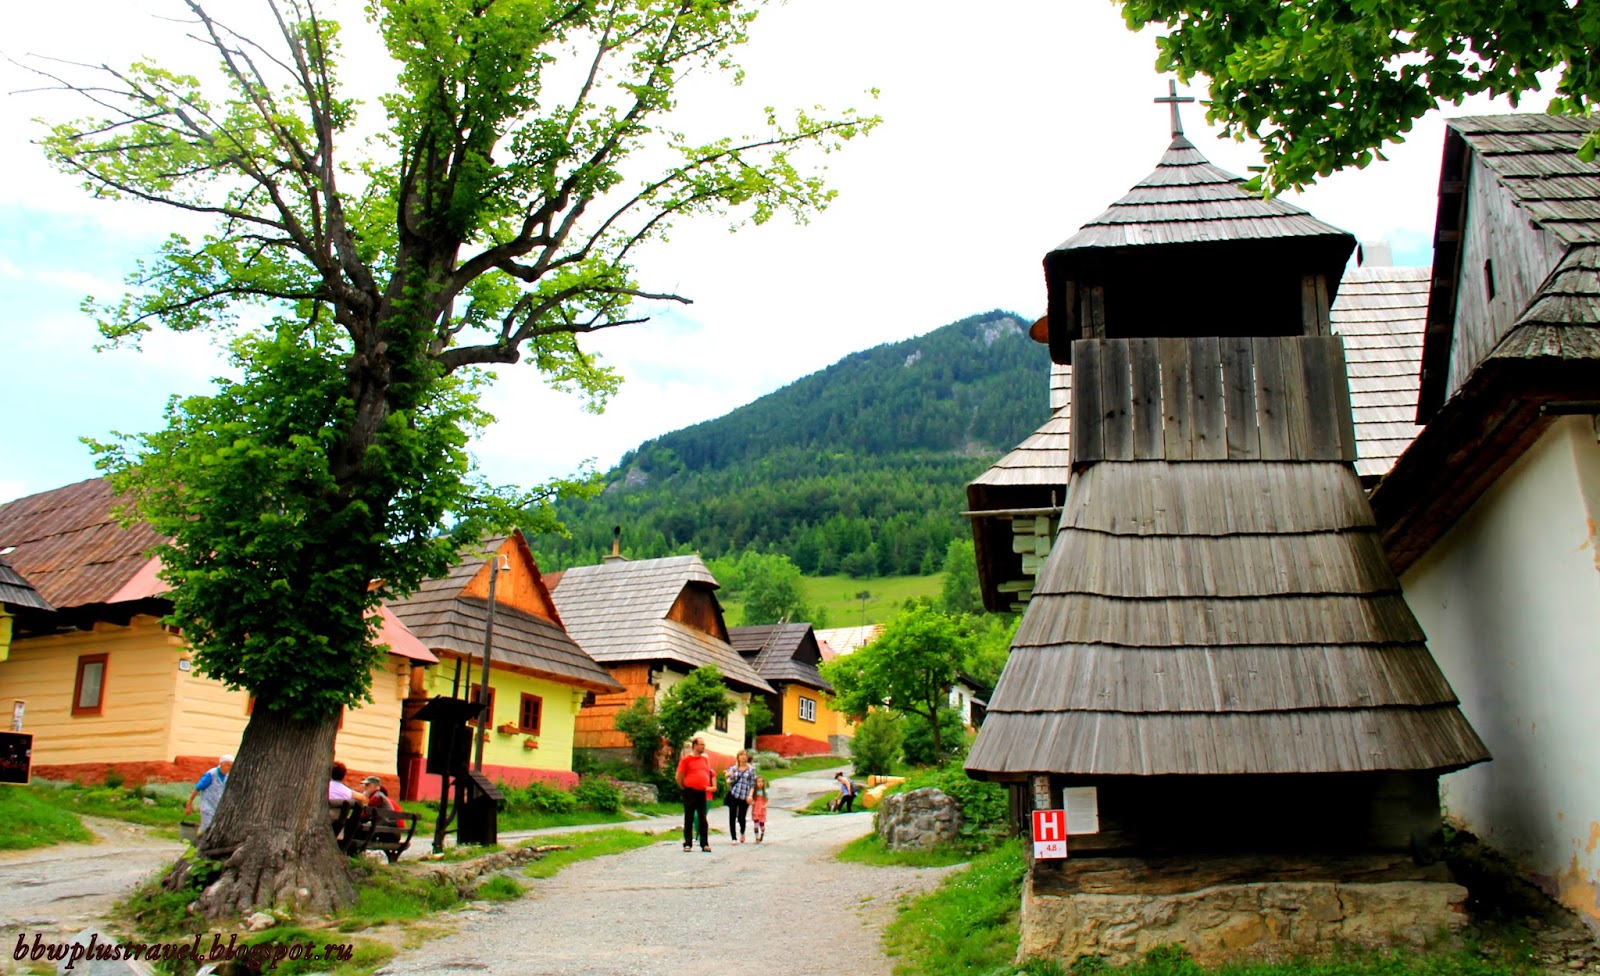 Небольшая деревня, спрятанная в словацкой части Карпат